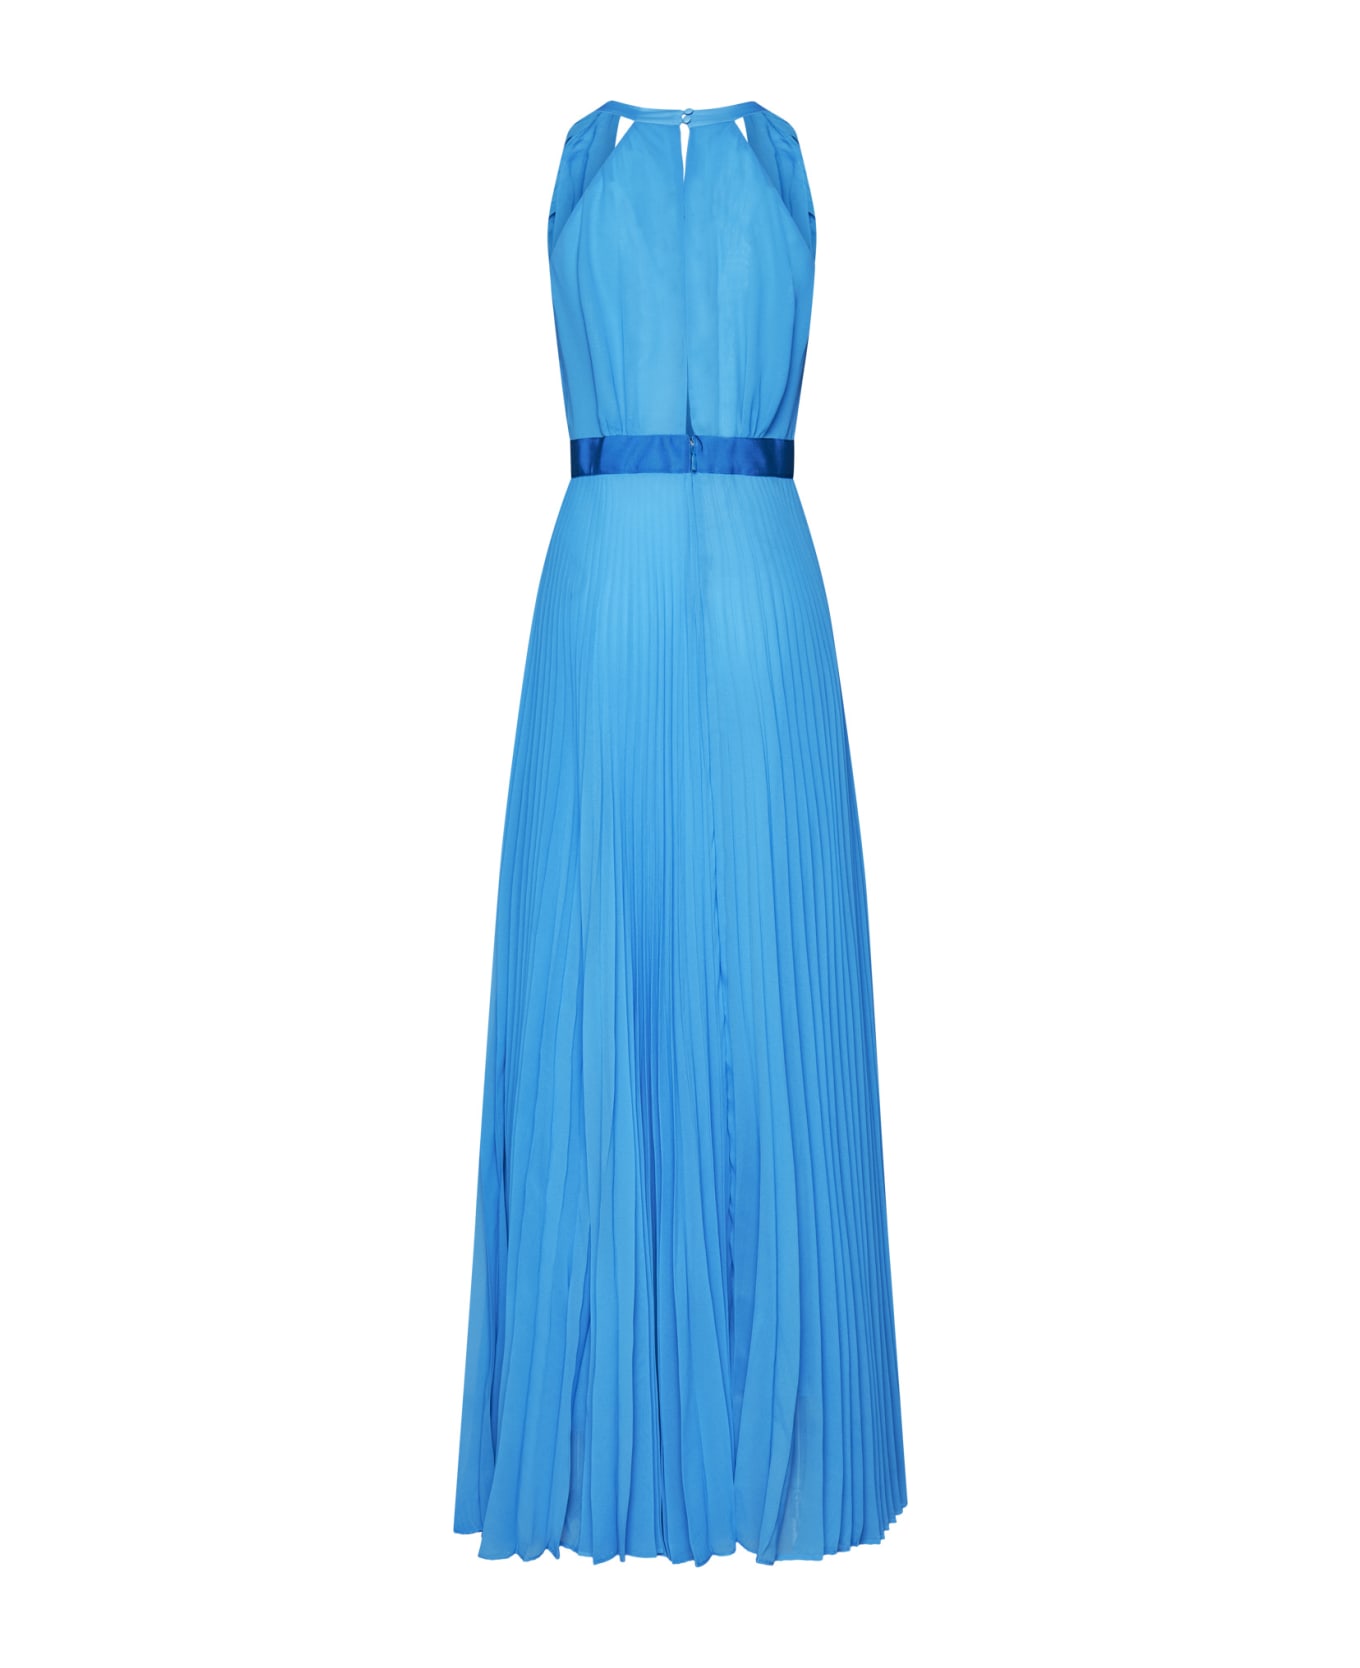 Pinko Dress - Light blue